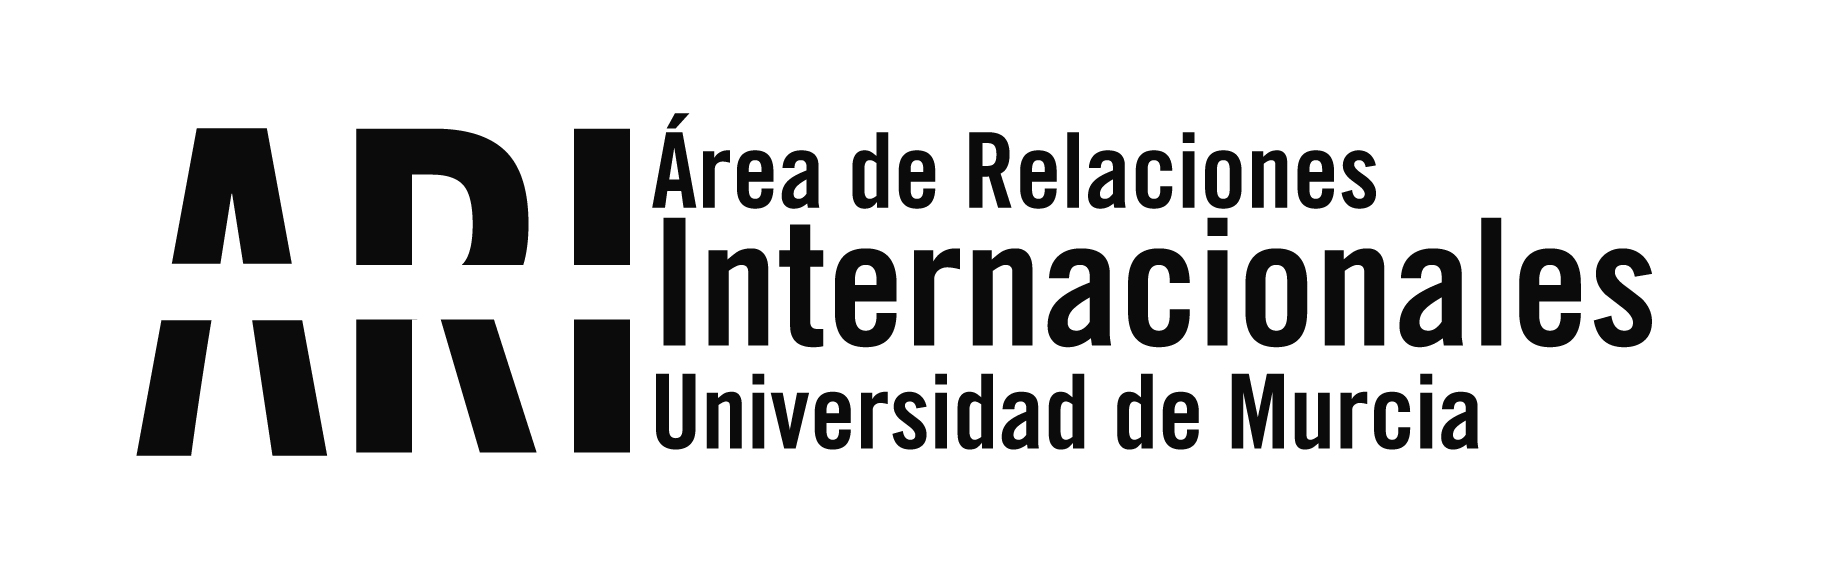 Actividades del proyecto Erasmus+ coordinado por la UMU sobre refugiados en Cartagena Piensa - Área de Relaciones Internacionales